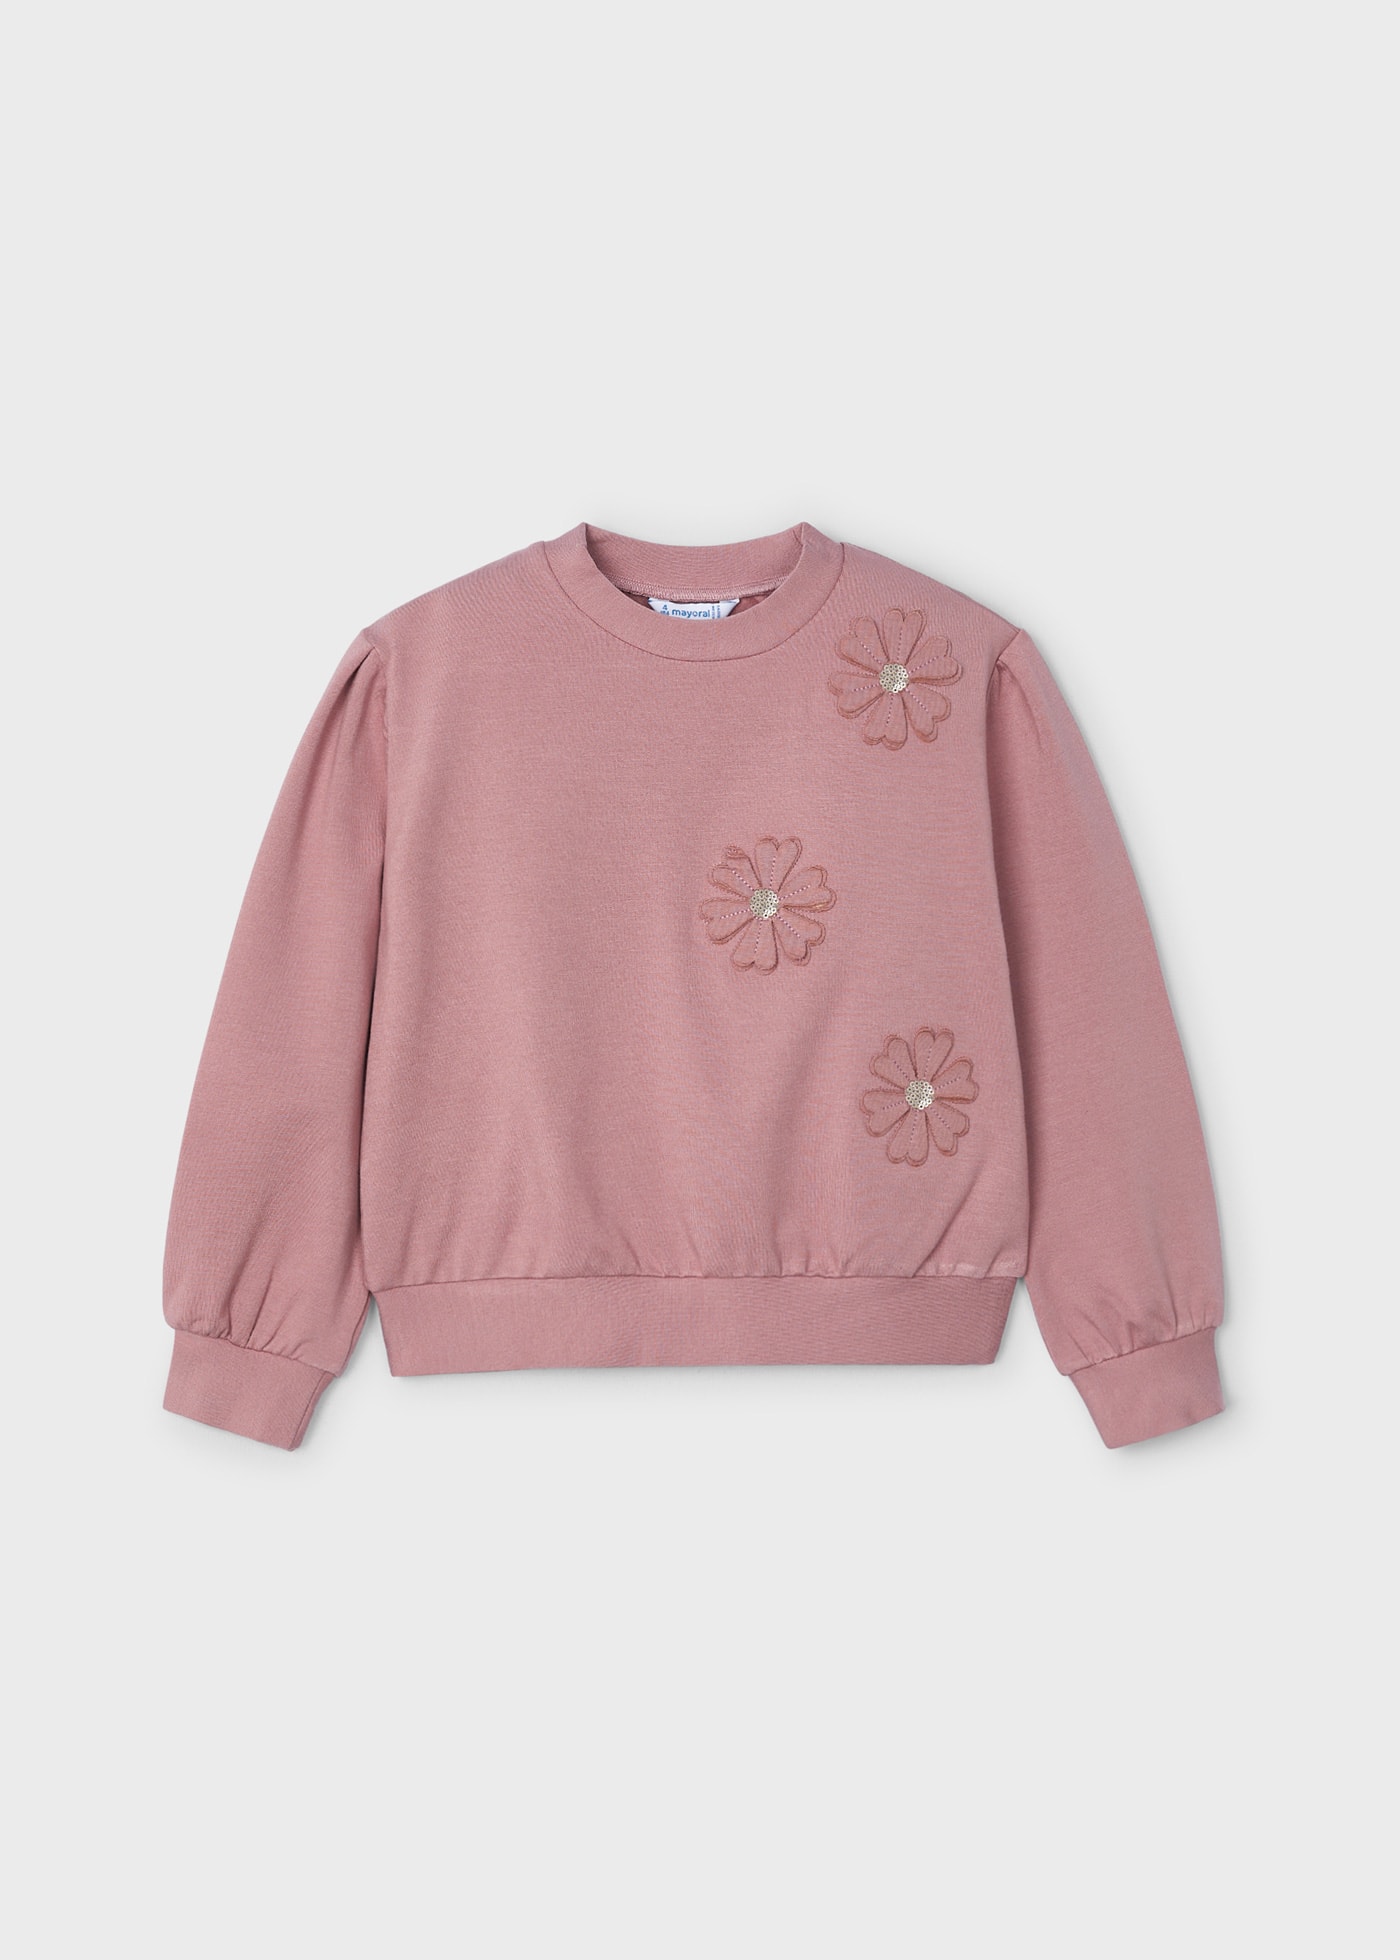 Sweatshirt Applikation Blumen Mädchen